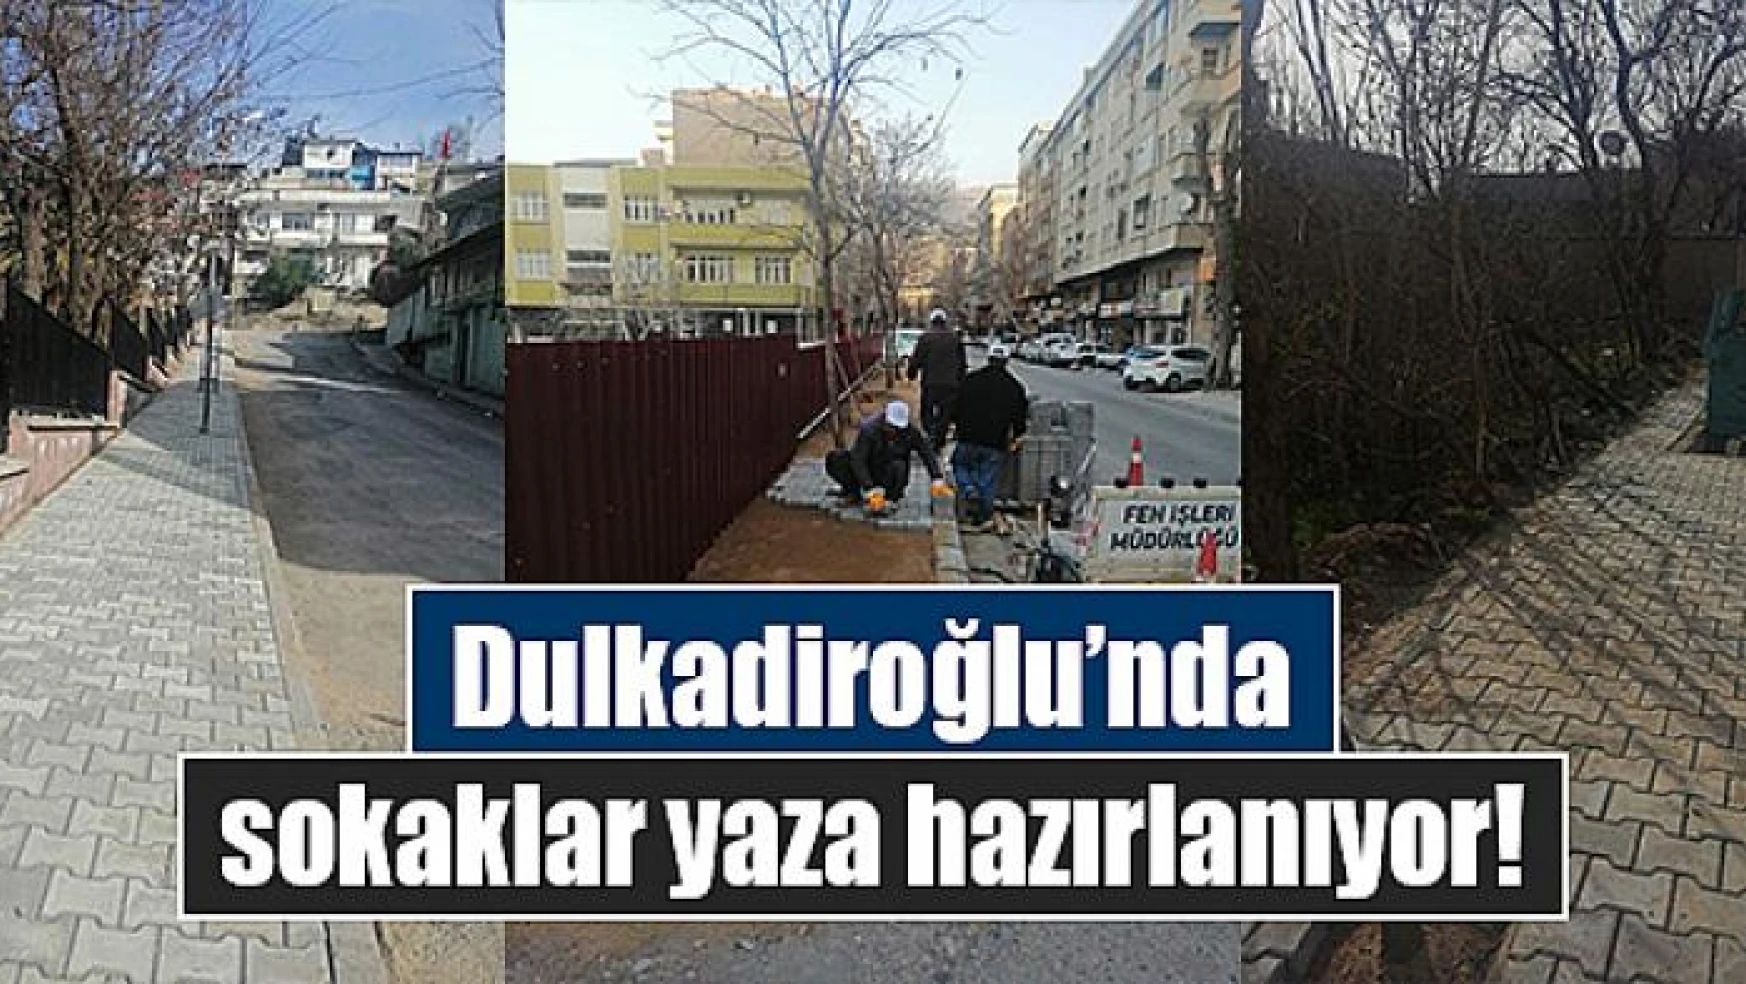 Dulkadiroğlu'nda sokaklar yaza hazırlanıyor!